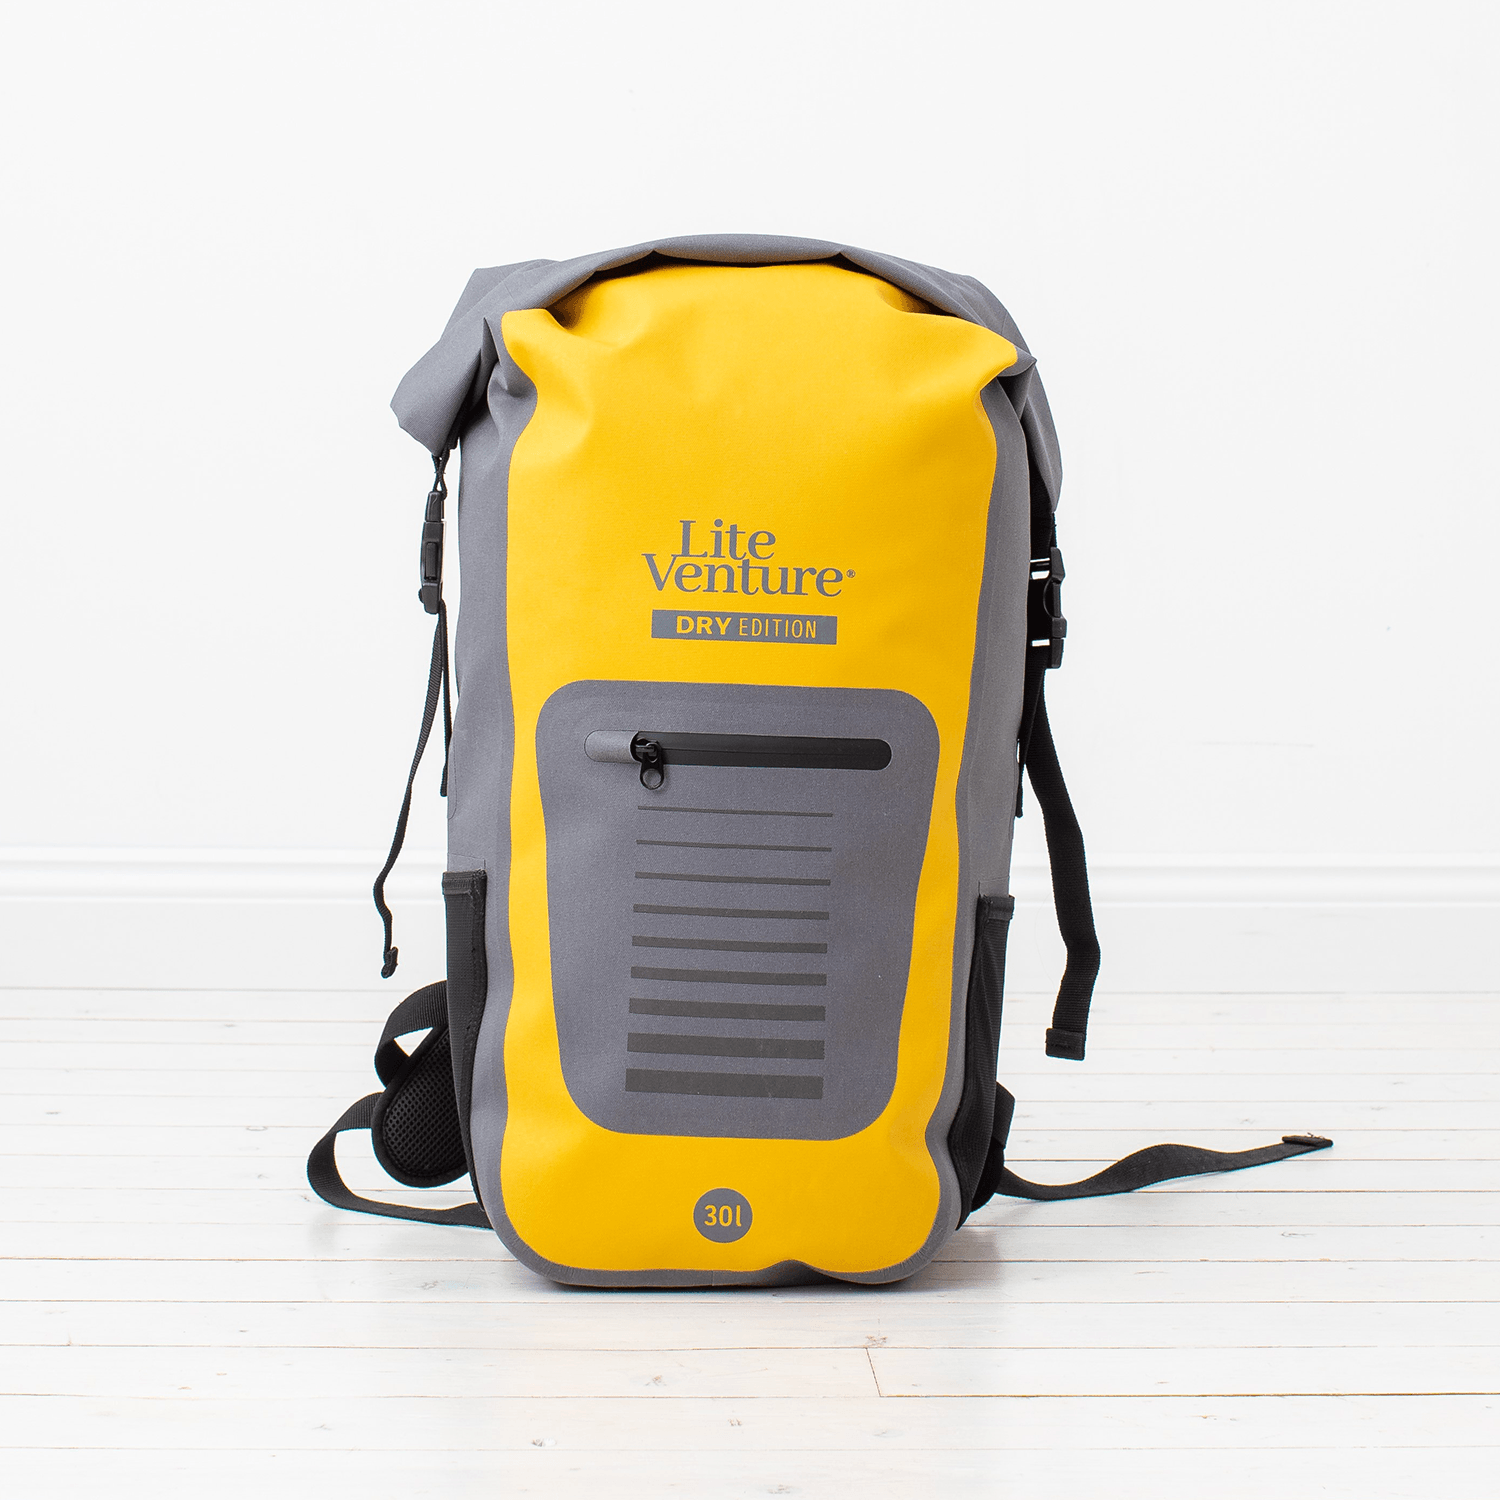 Produktbild von zubehör " Packsack / Backpack-Dry Edition Trockensack-30 Liter " der Marke Lite Venture für 69.95 €. Erhältlich online bei Lite Venture ( www.liteventure.de )